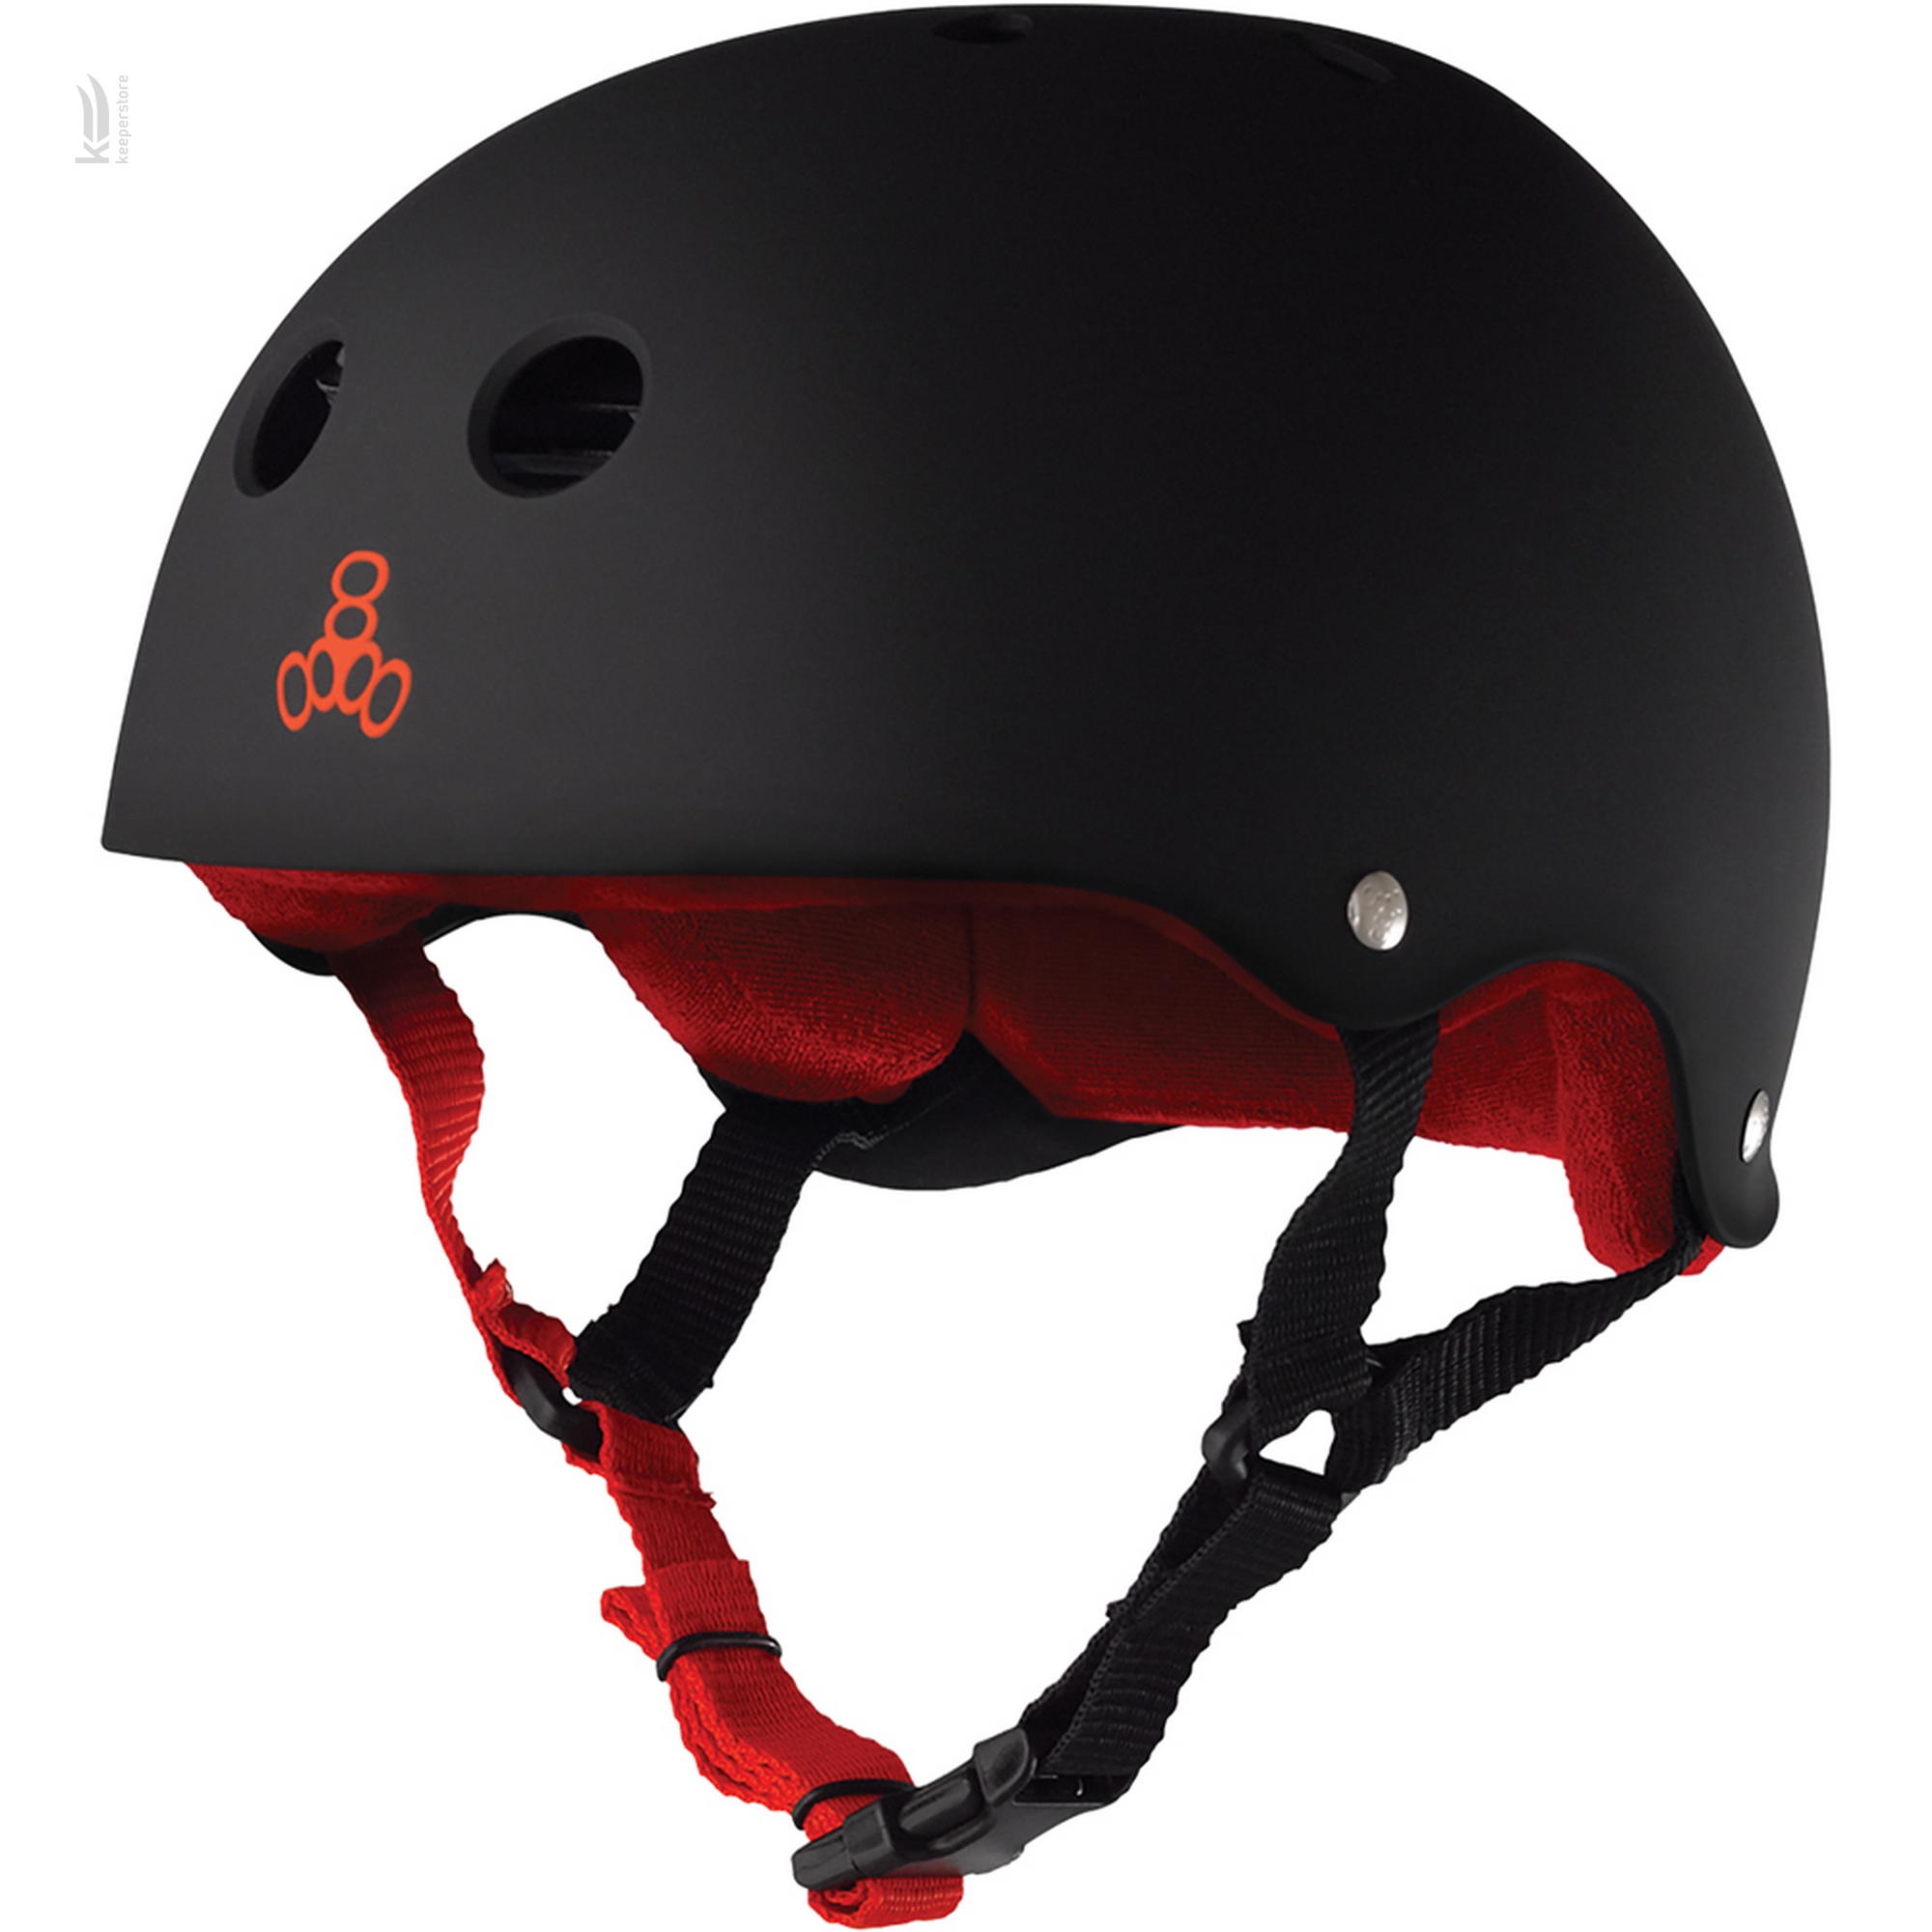 Детский шлем для роликов Triple8 Sweatsaver Helmet Black w/ Red (S)